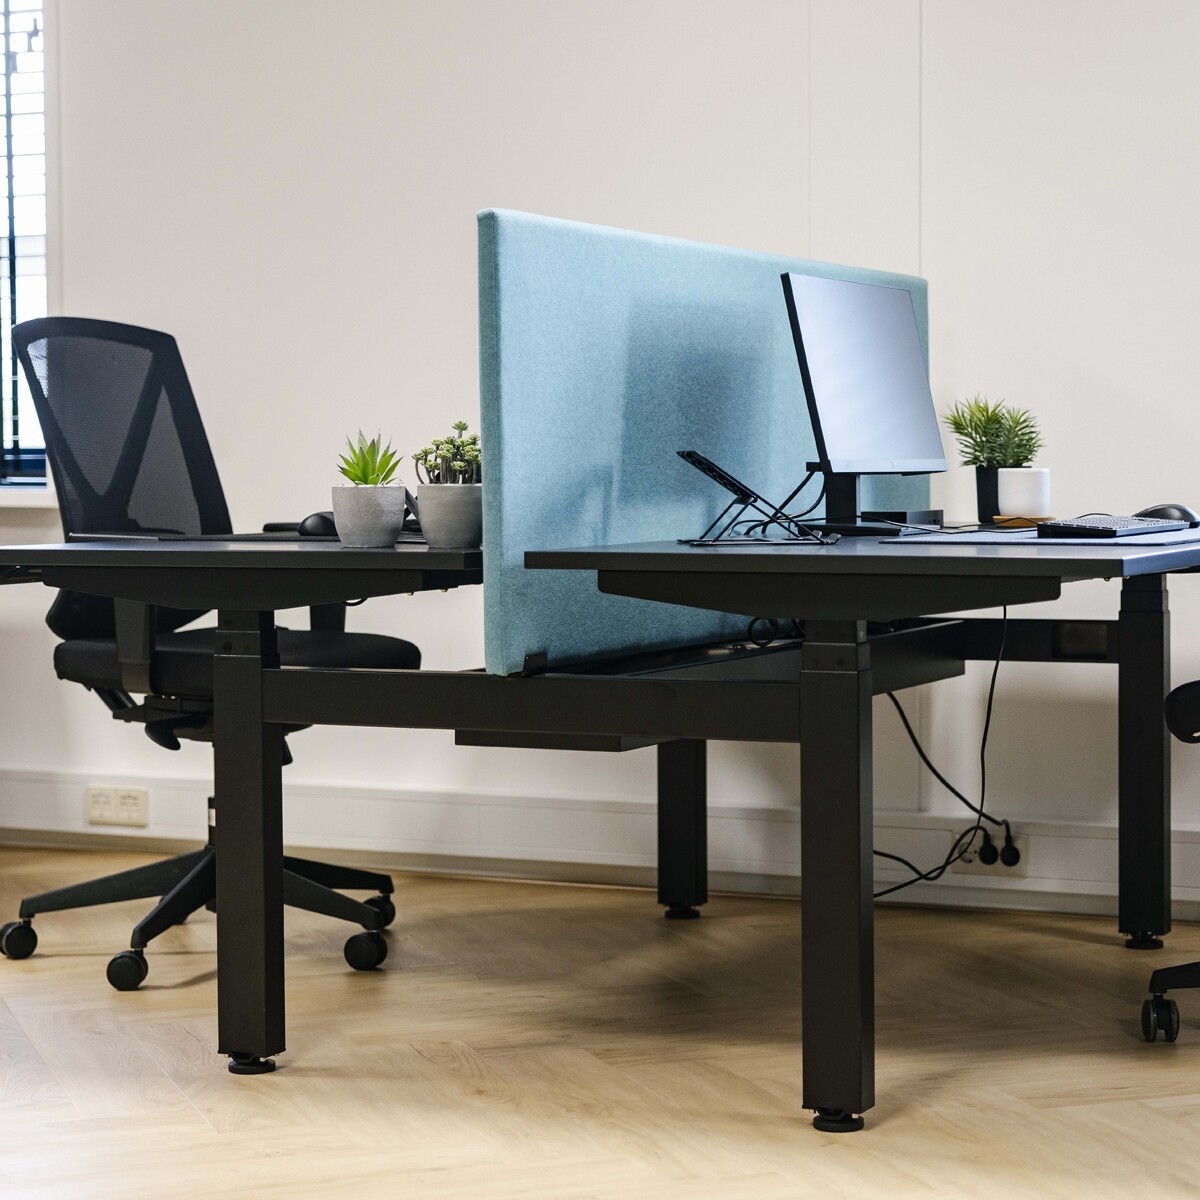 zwart bureau, blauwe scheidingwand tussen bureaus